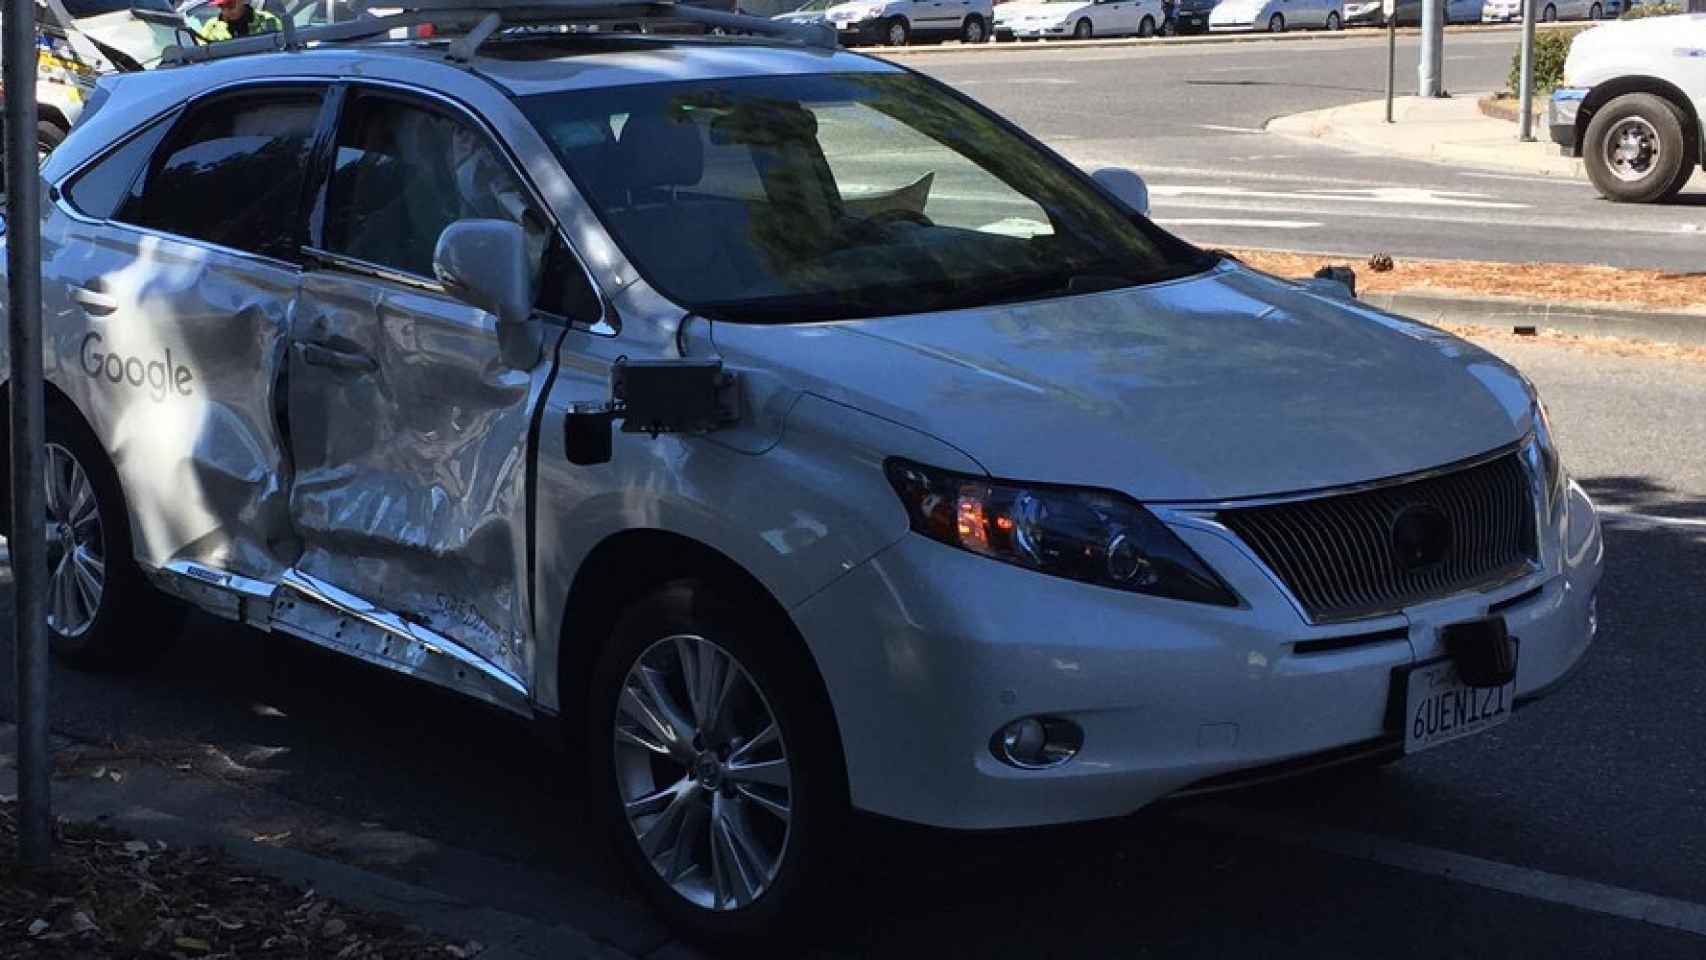 coche-google-accidente-2